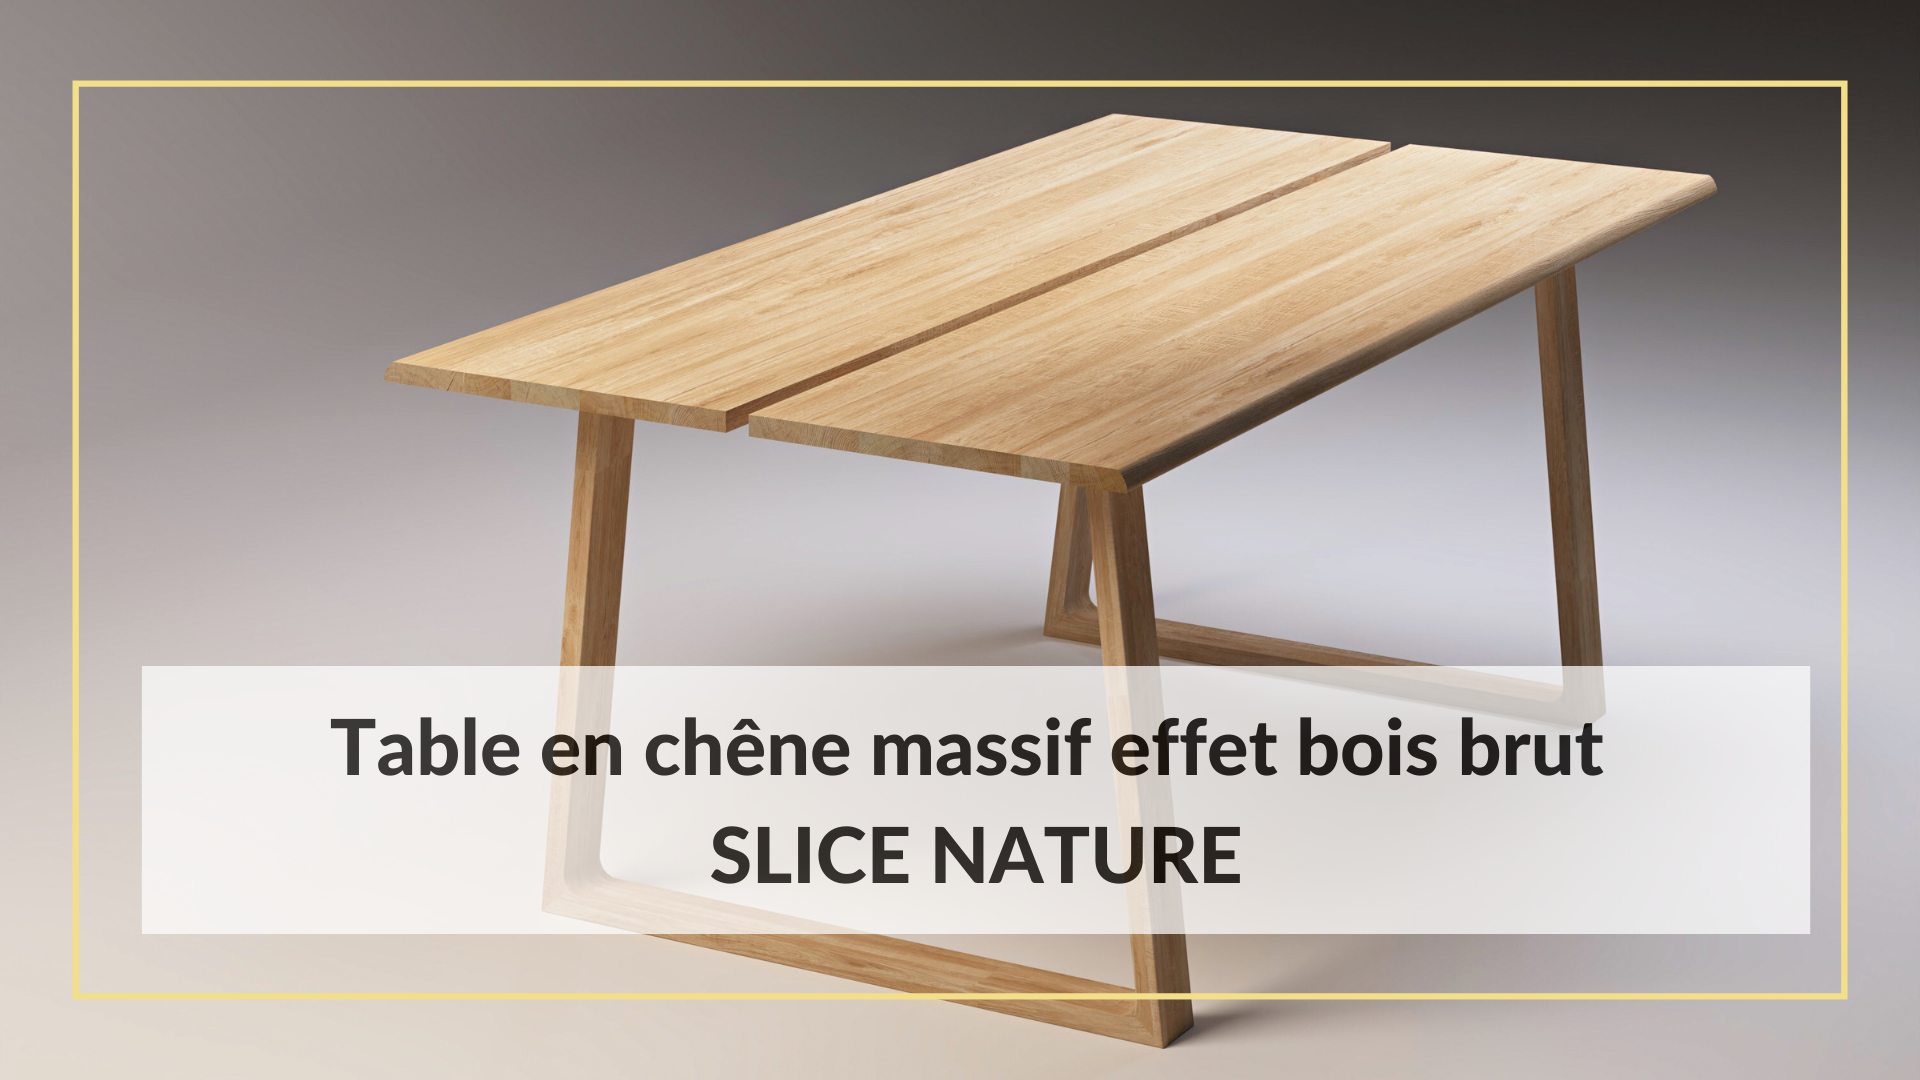 Table en chêne massif effet bois brut SLICE NATURE, inspirée par la nature.